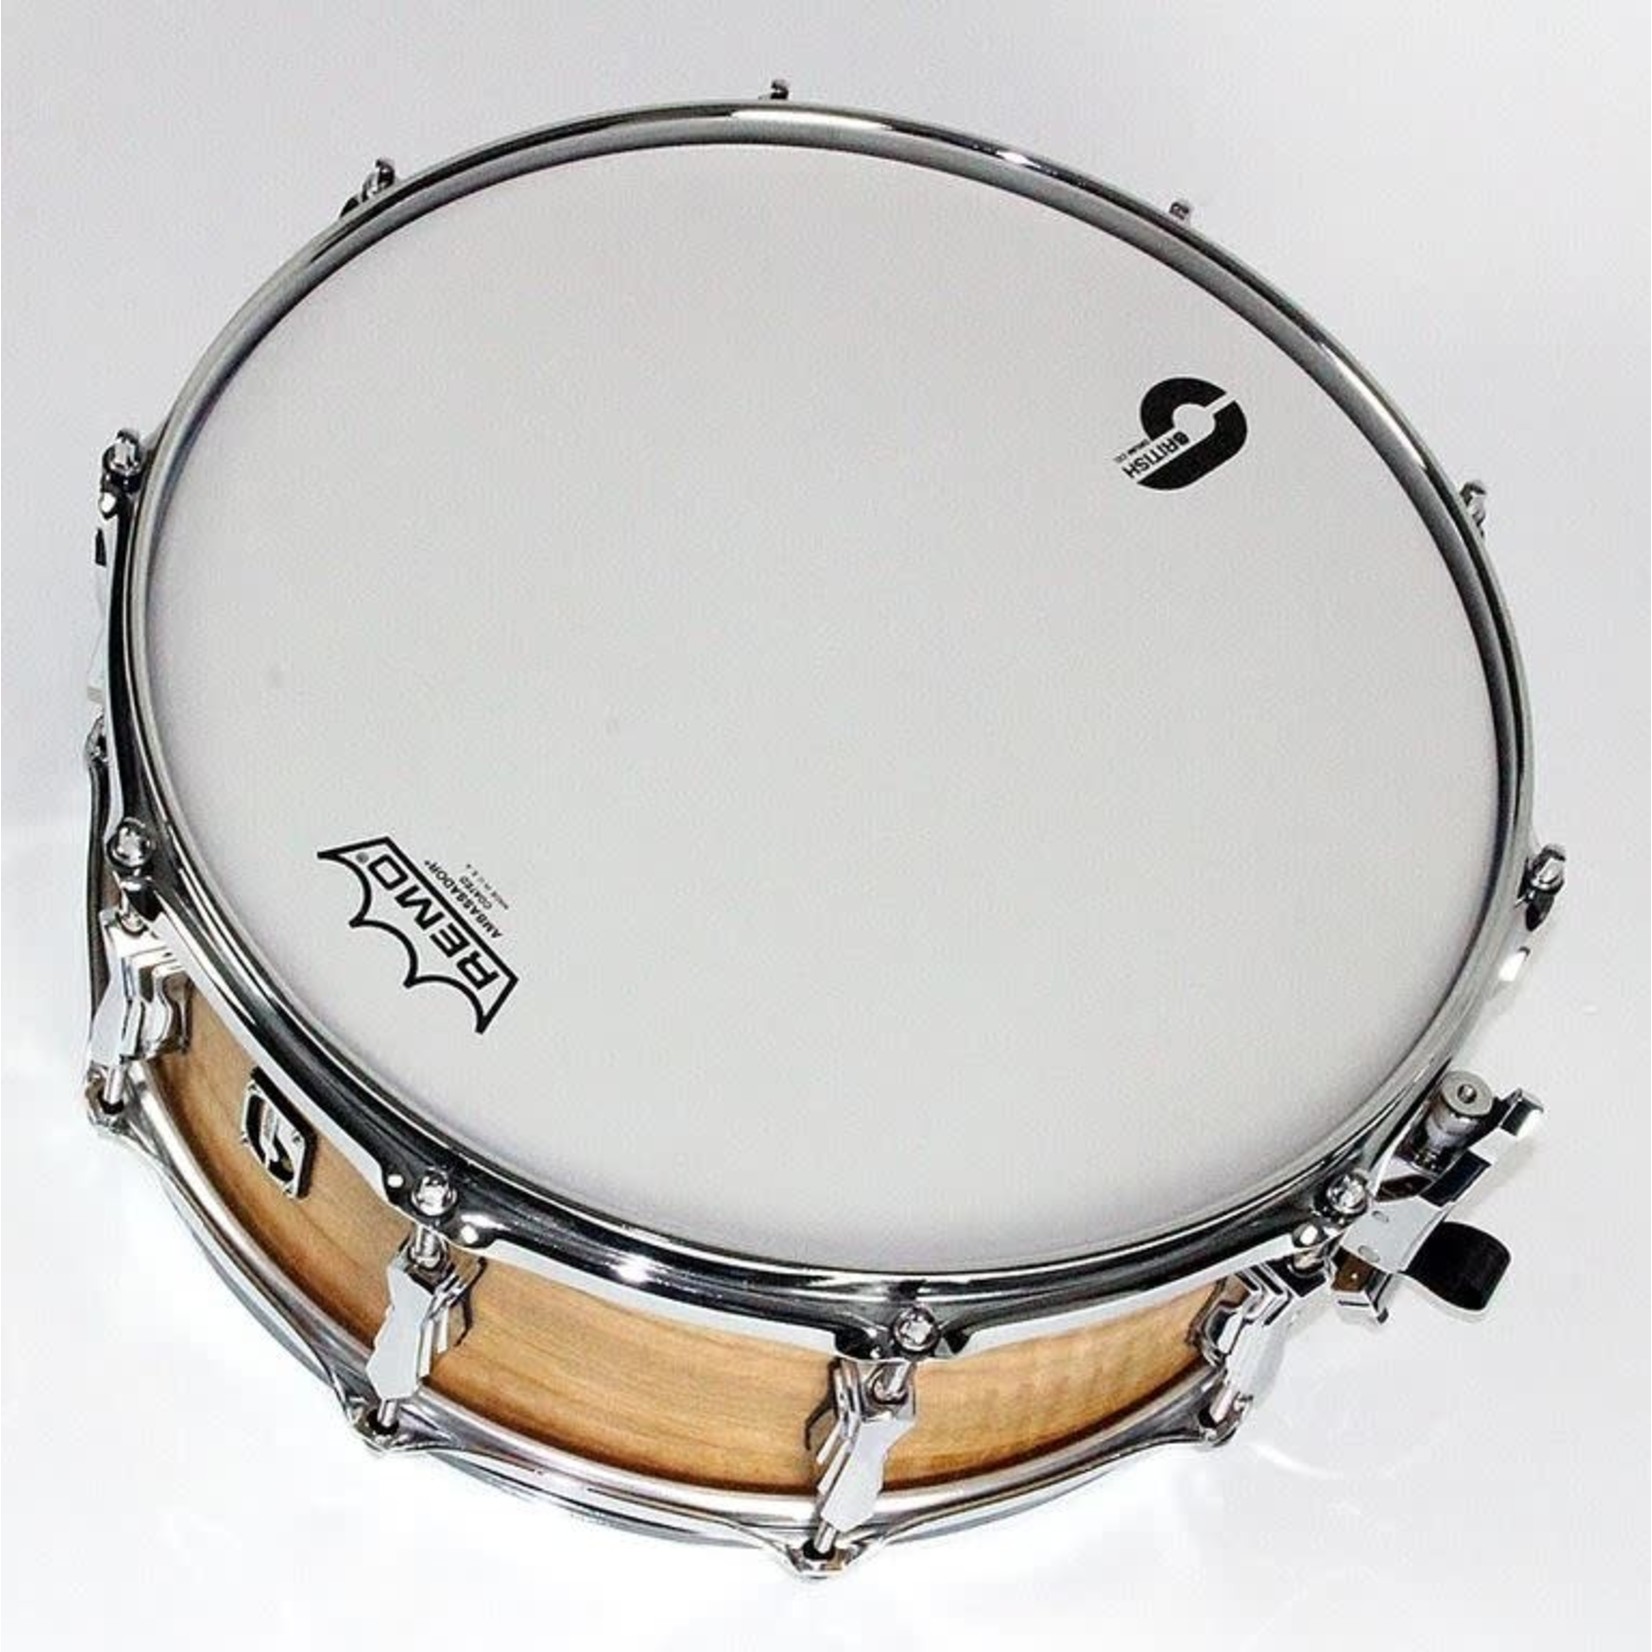 British Drum Co. British Drum Co. "The Maverick" 6.5x14" 10-Ply Maple Snare Drum